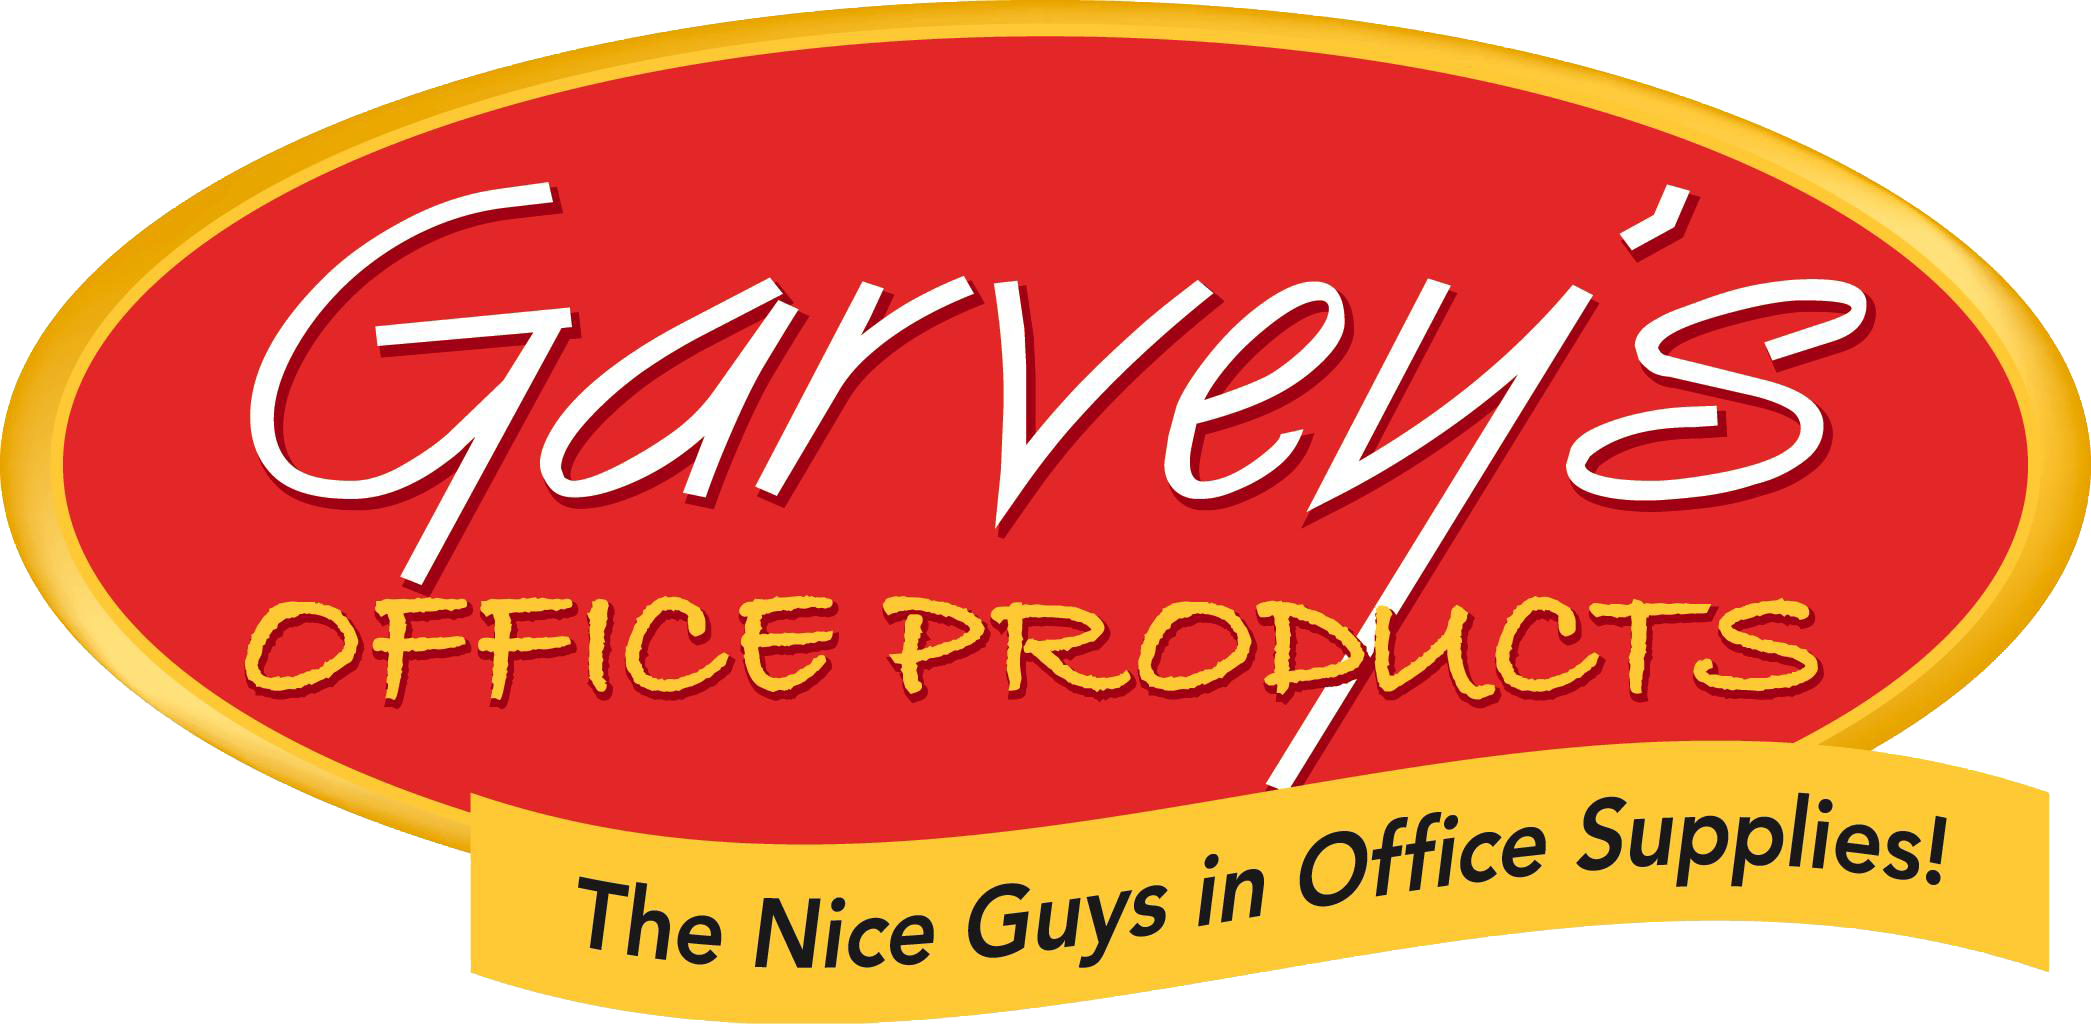 Garvey's